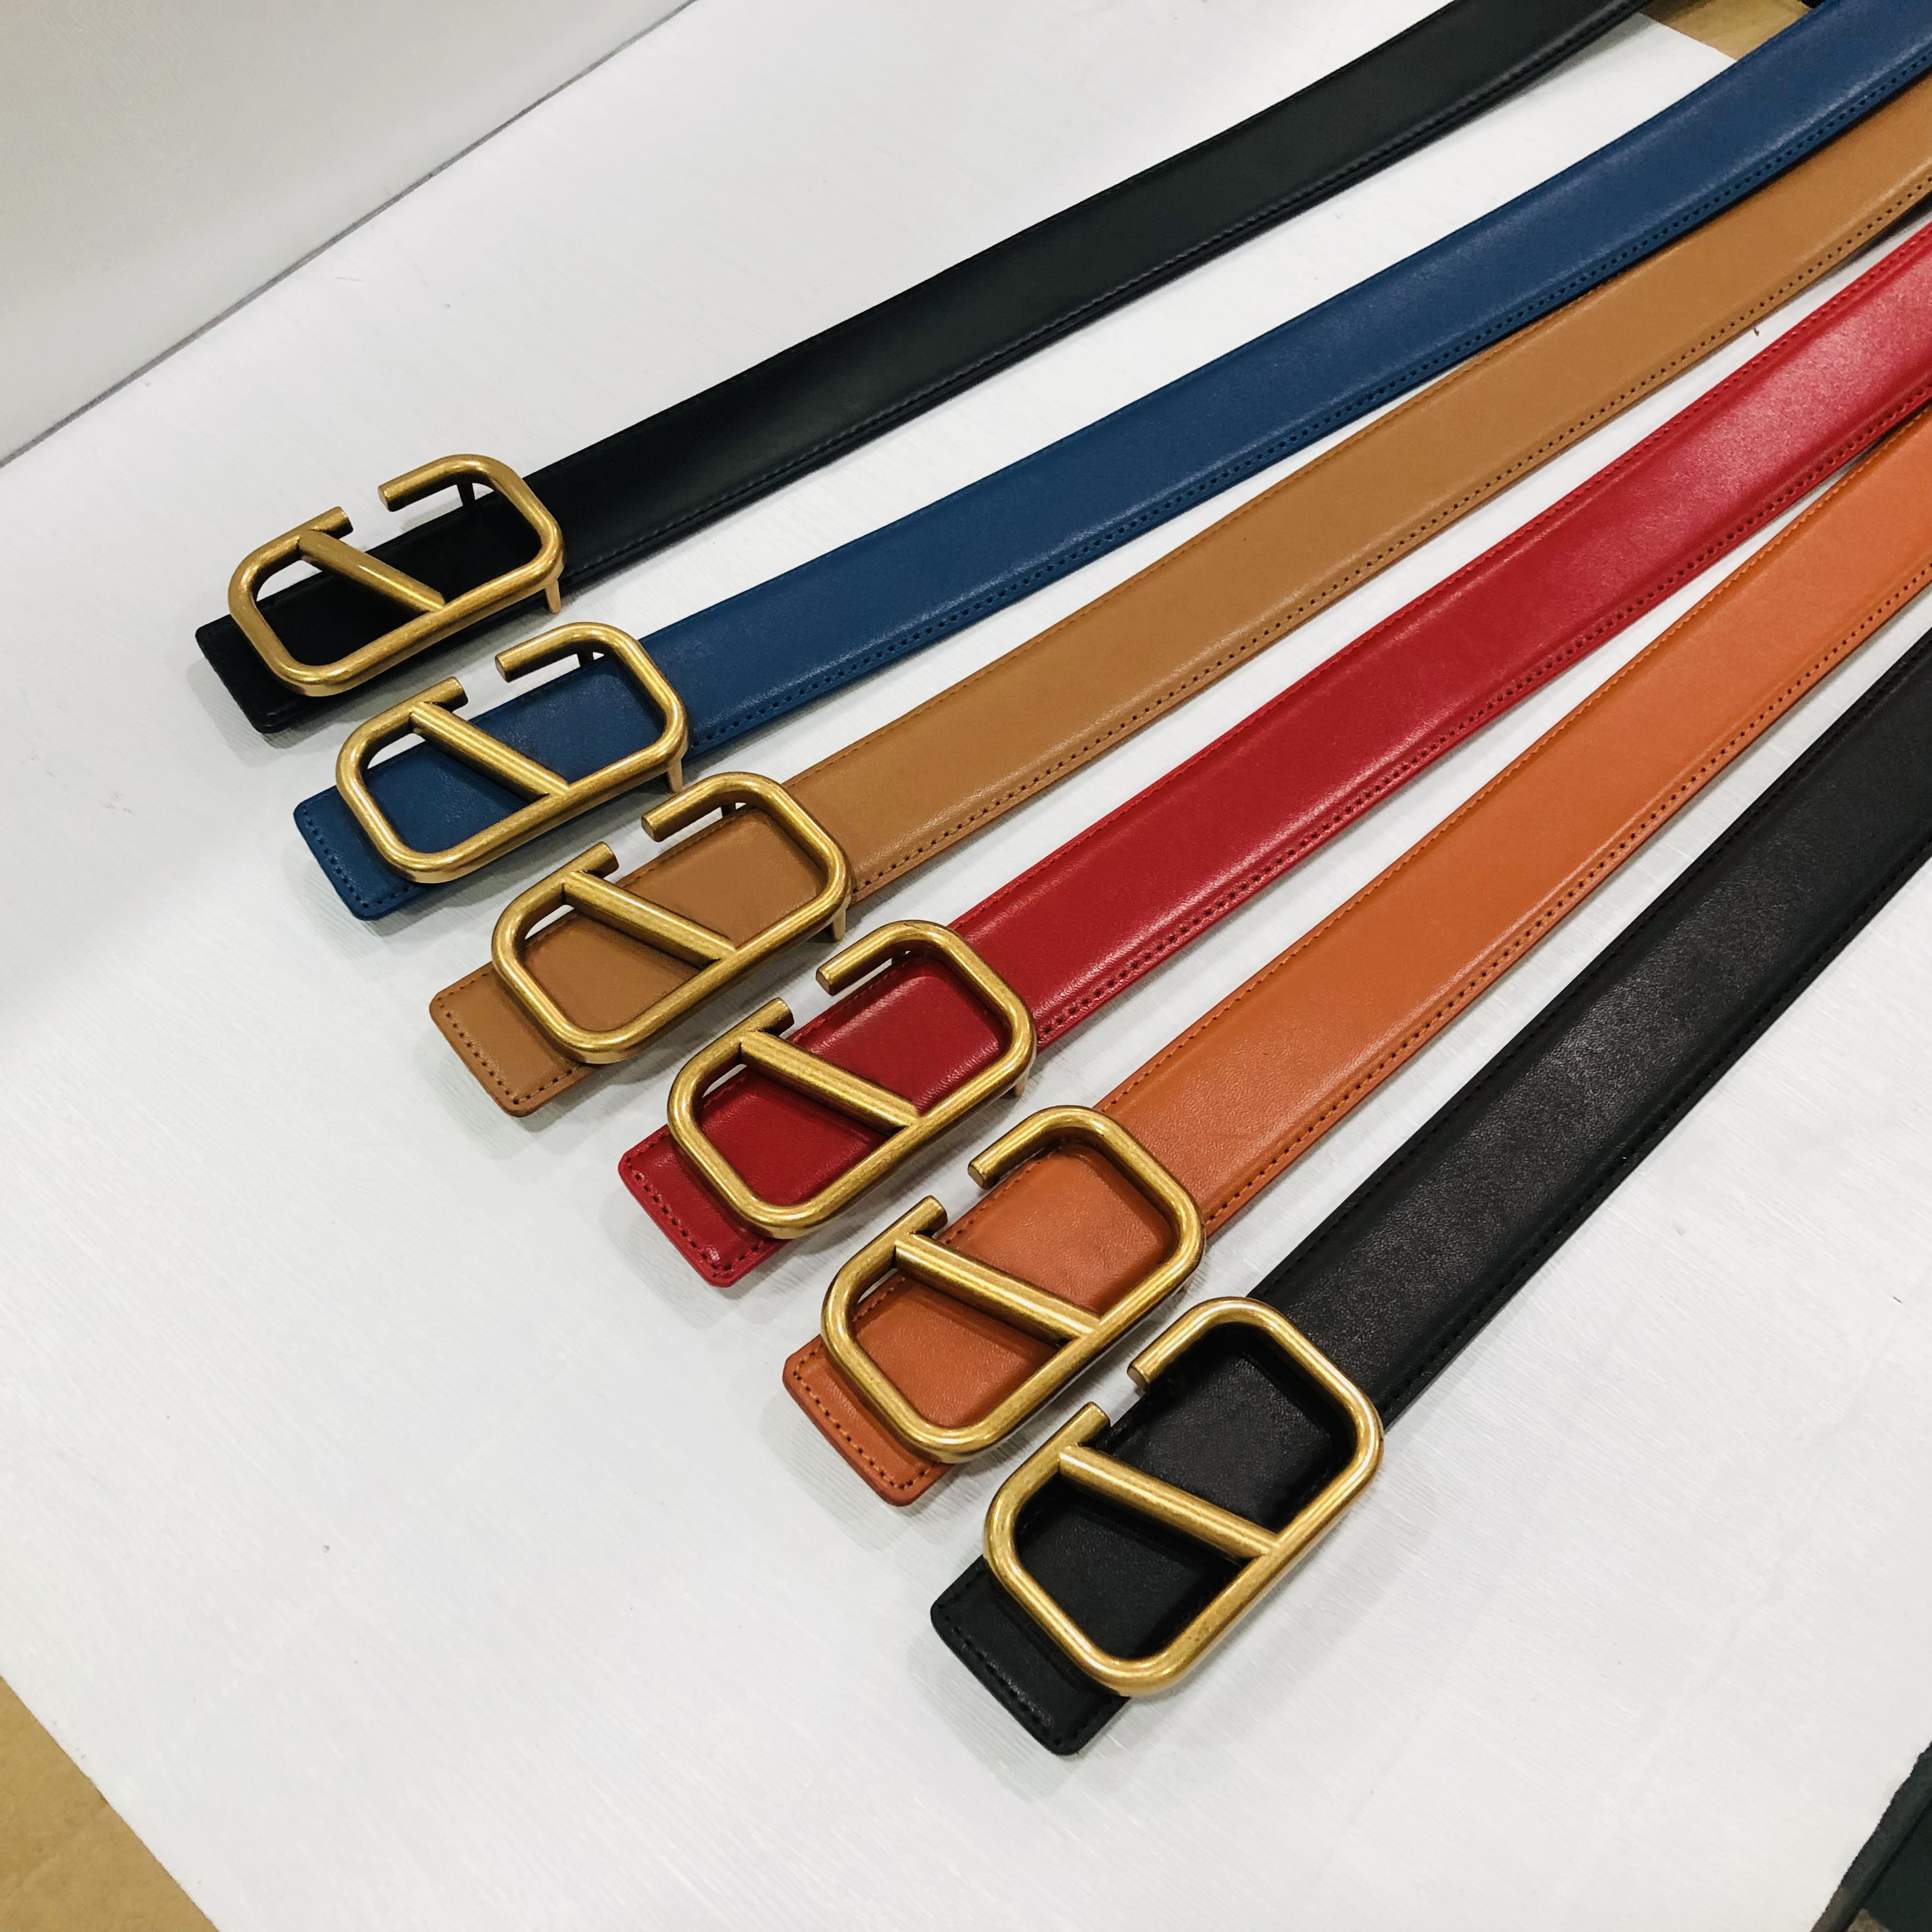 Moda clássica letra de ouro sólido Belts para mulheres Designers Belt Big Buckle 5 Cores Largura 4cm com caixa vermelha